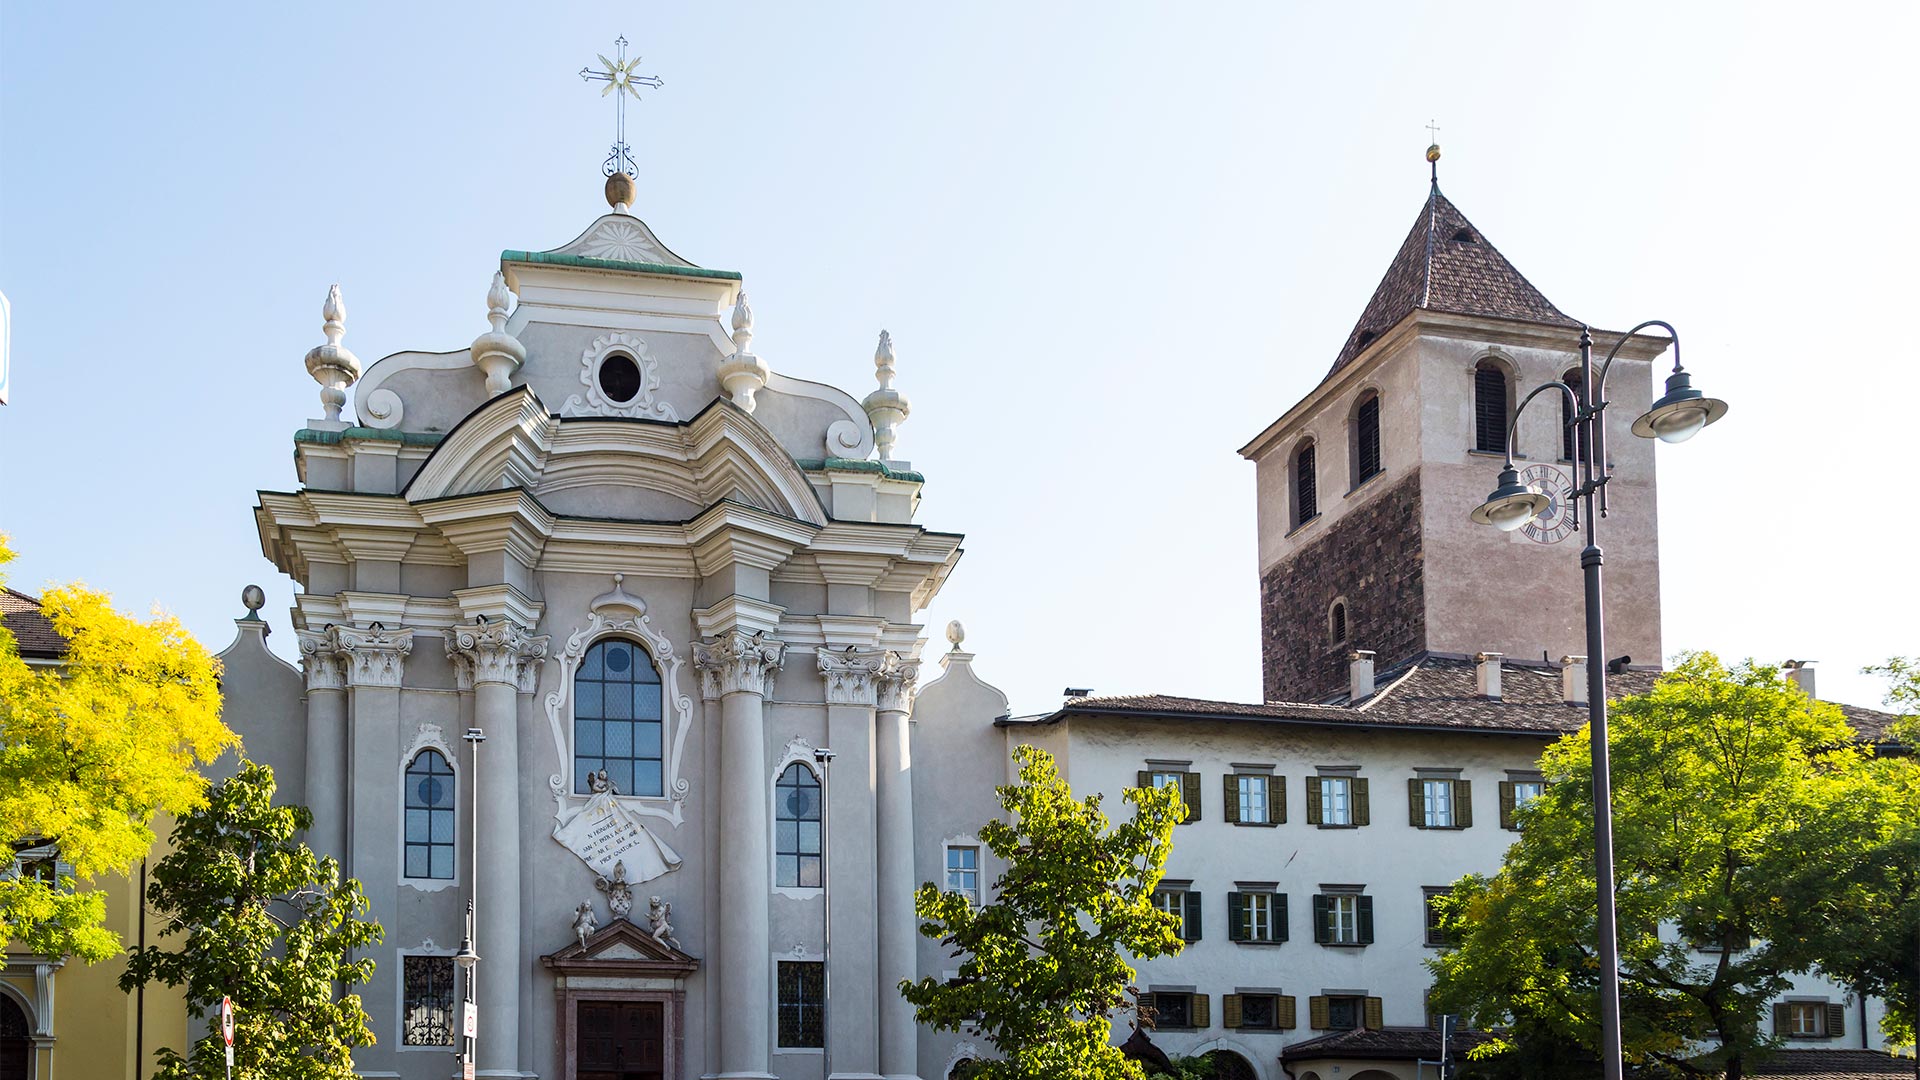 Vista in una giornata di sole su una chiesa tradizionale a Bolzano. Accanto un vecchio campanile che segna le 4 del pomeriggio.